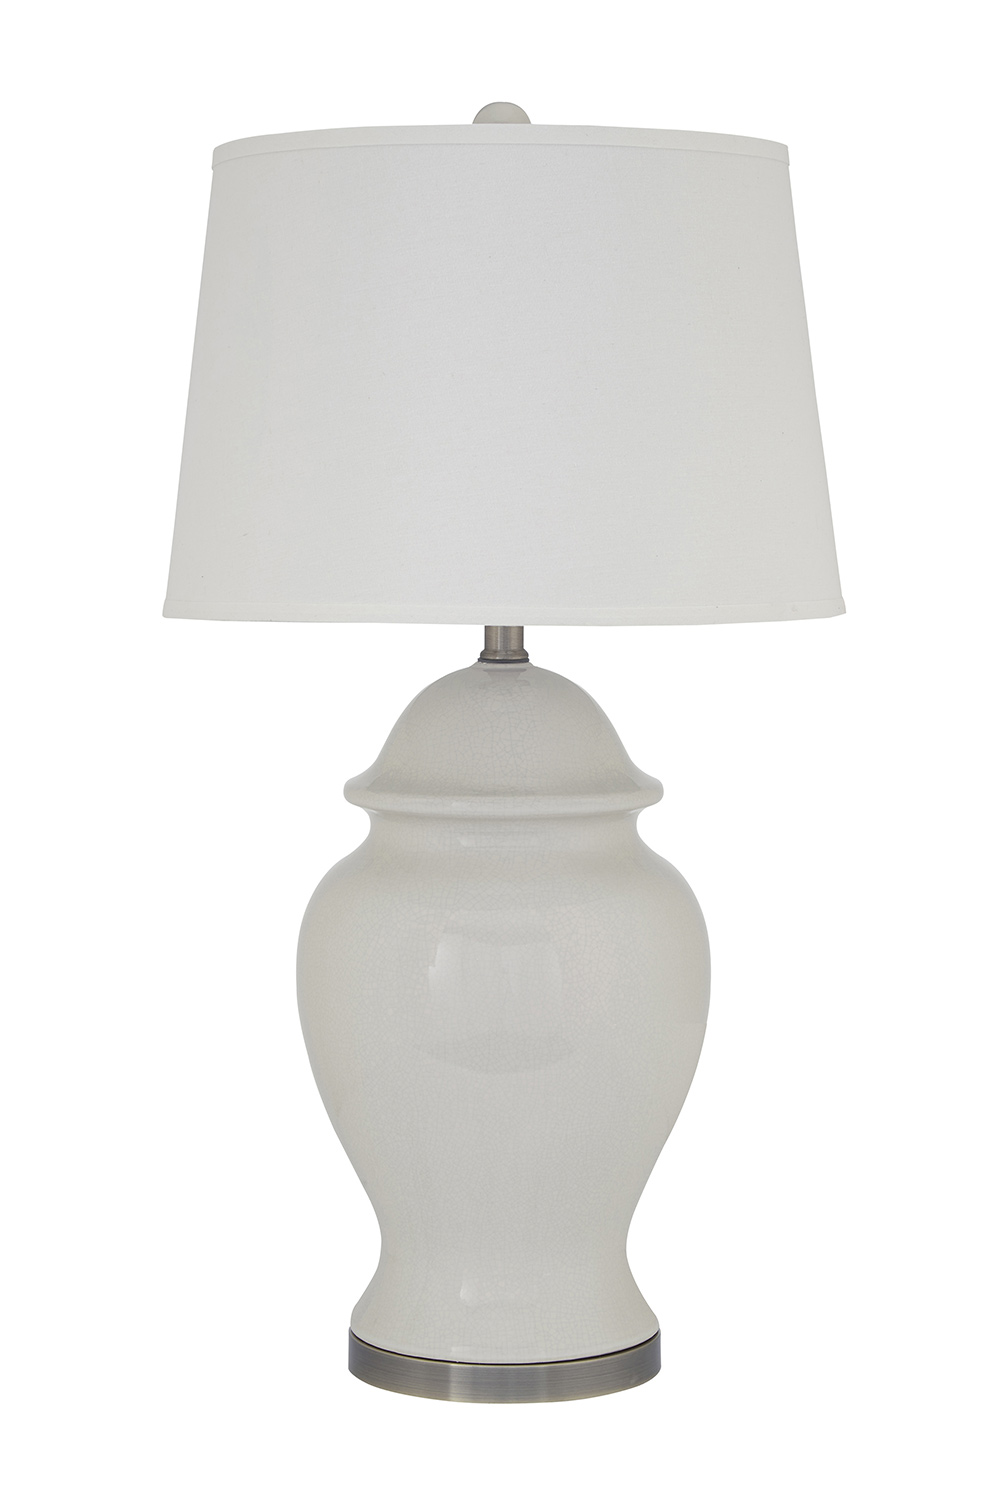 Ashley Darena Ceramic Table Lamp